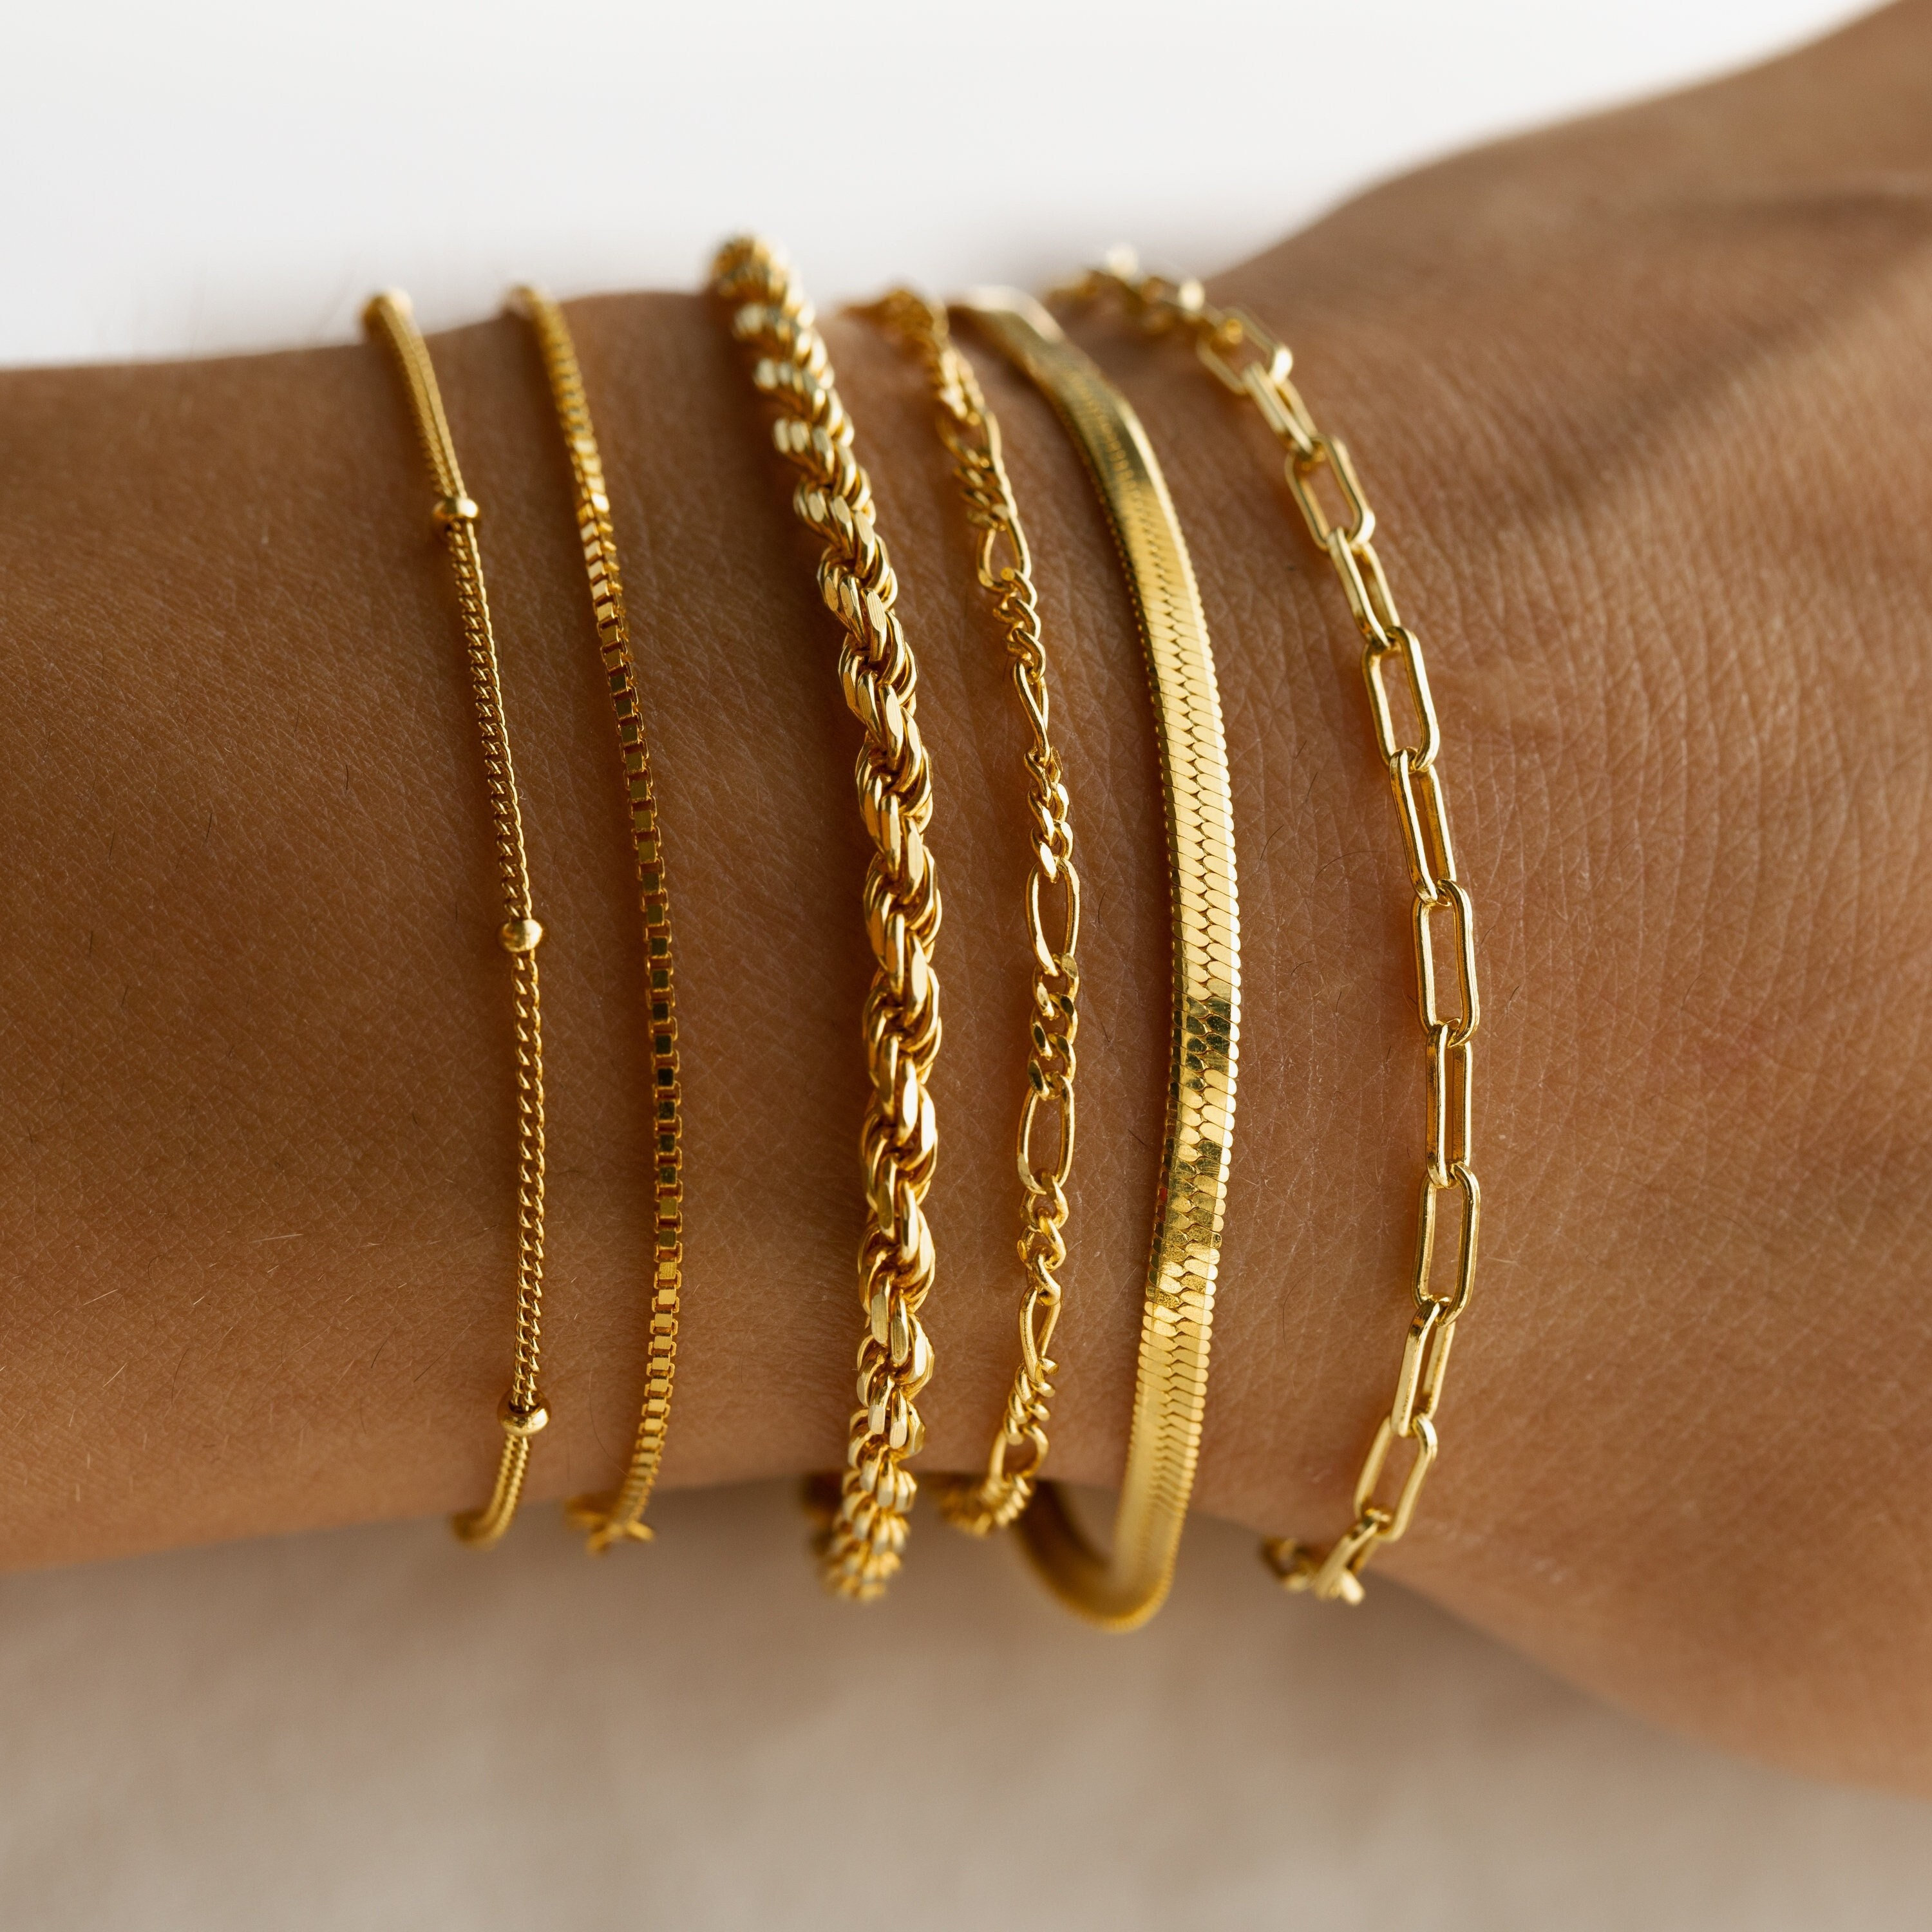 Gold Bracelet The Best Daily-Wear Jewellery by Niscka - Gold Bracelet